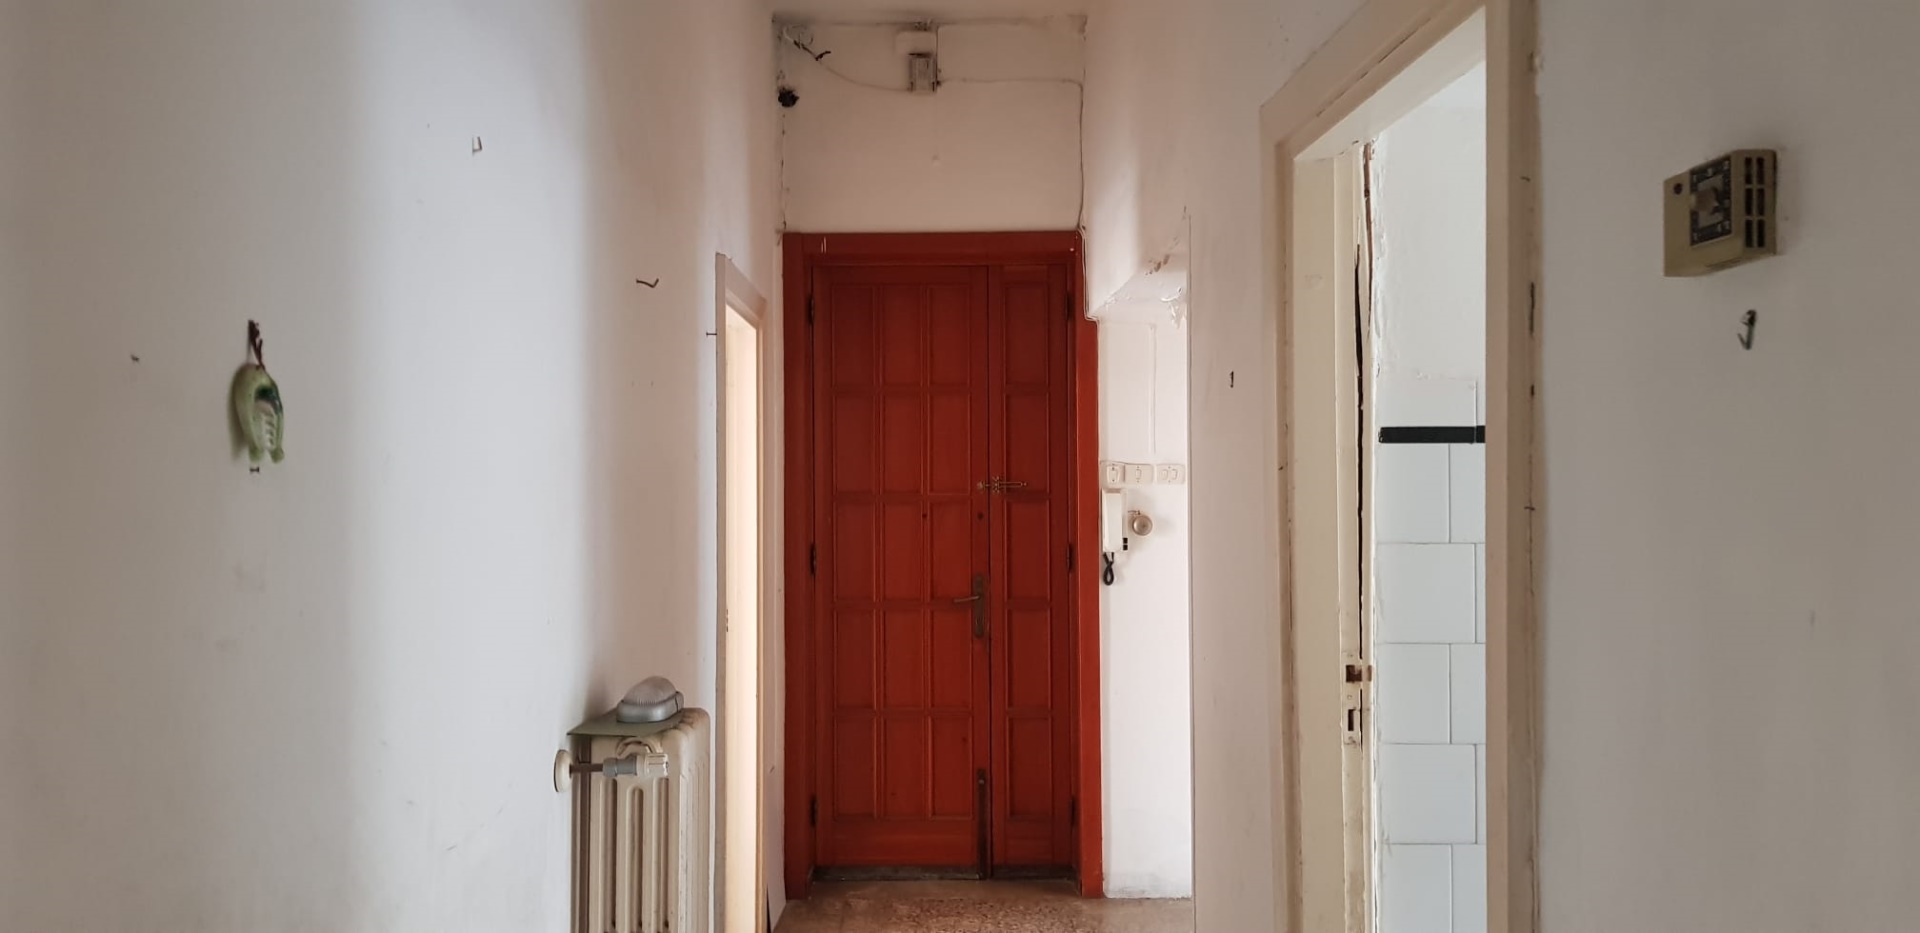 Appartamento in vendita a Novoli, 5 locali, prezzo € 29.000 | PortaleAgenzieImmobiliari.it